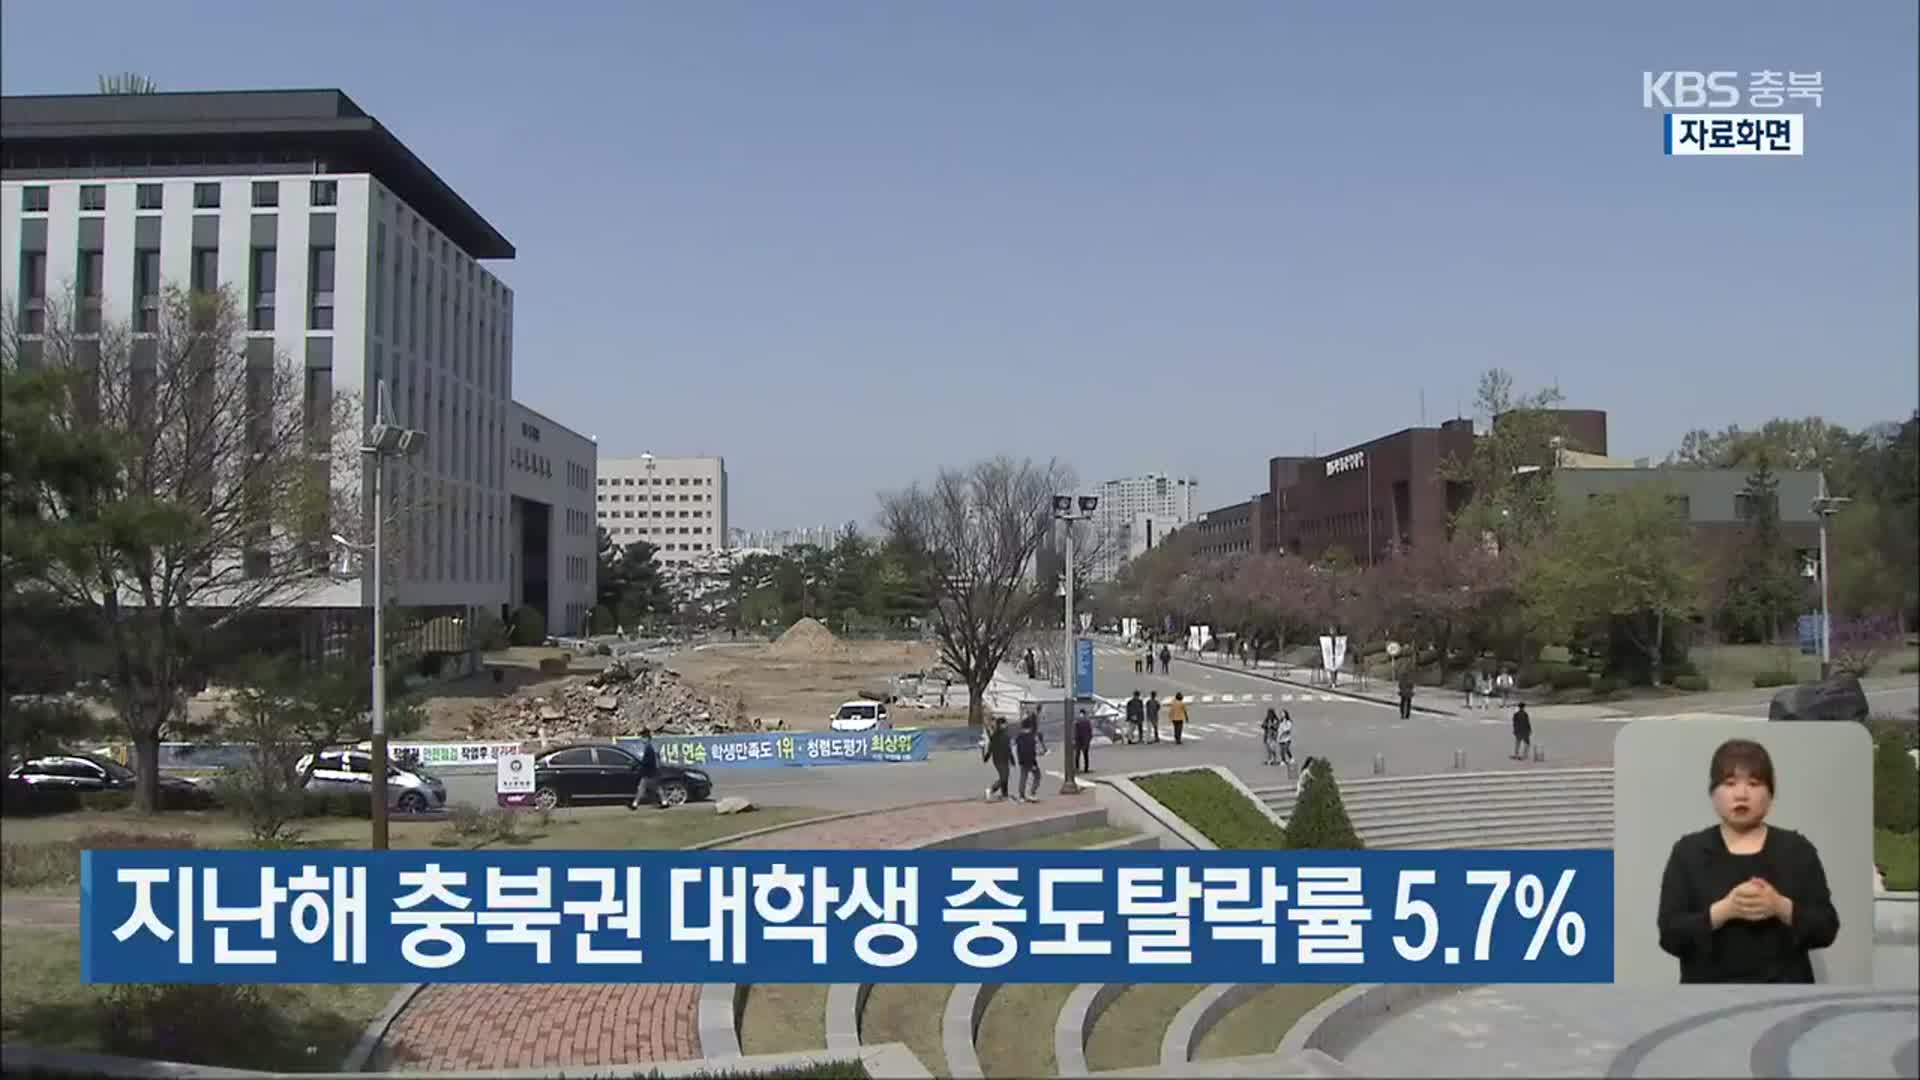 지난해 충북권 대학생 중도탈락률 5.7%